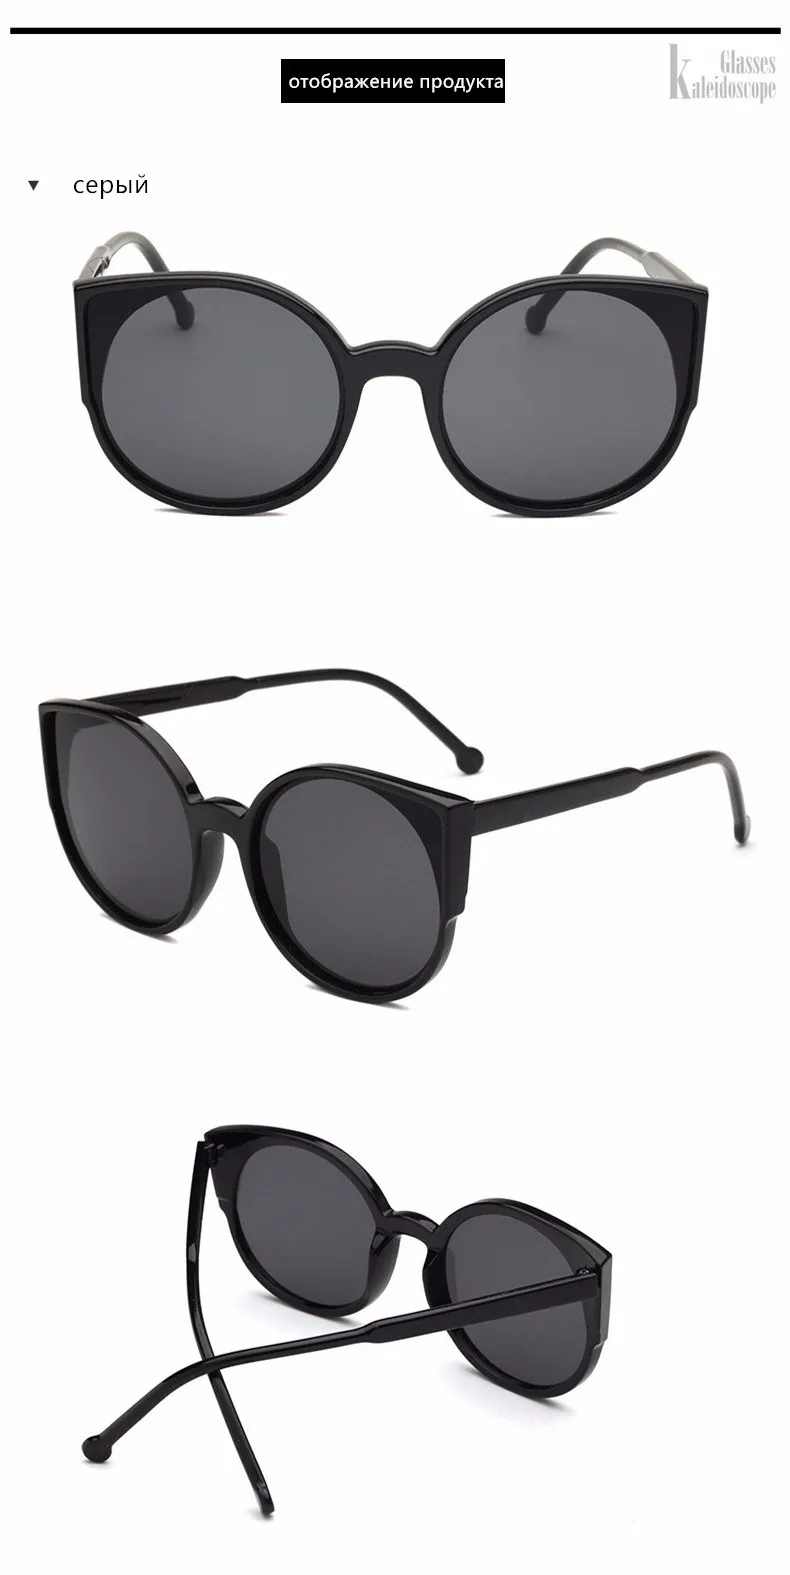 Калейдоскоп очки кошачий глаз Для женщин покрытие отражающее зеркало солнцезащитные очки дамы Винтаж UV400 очки